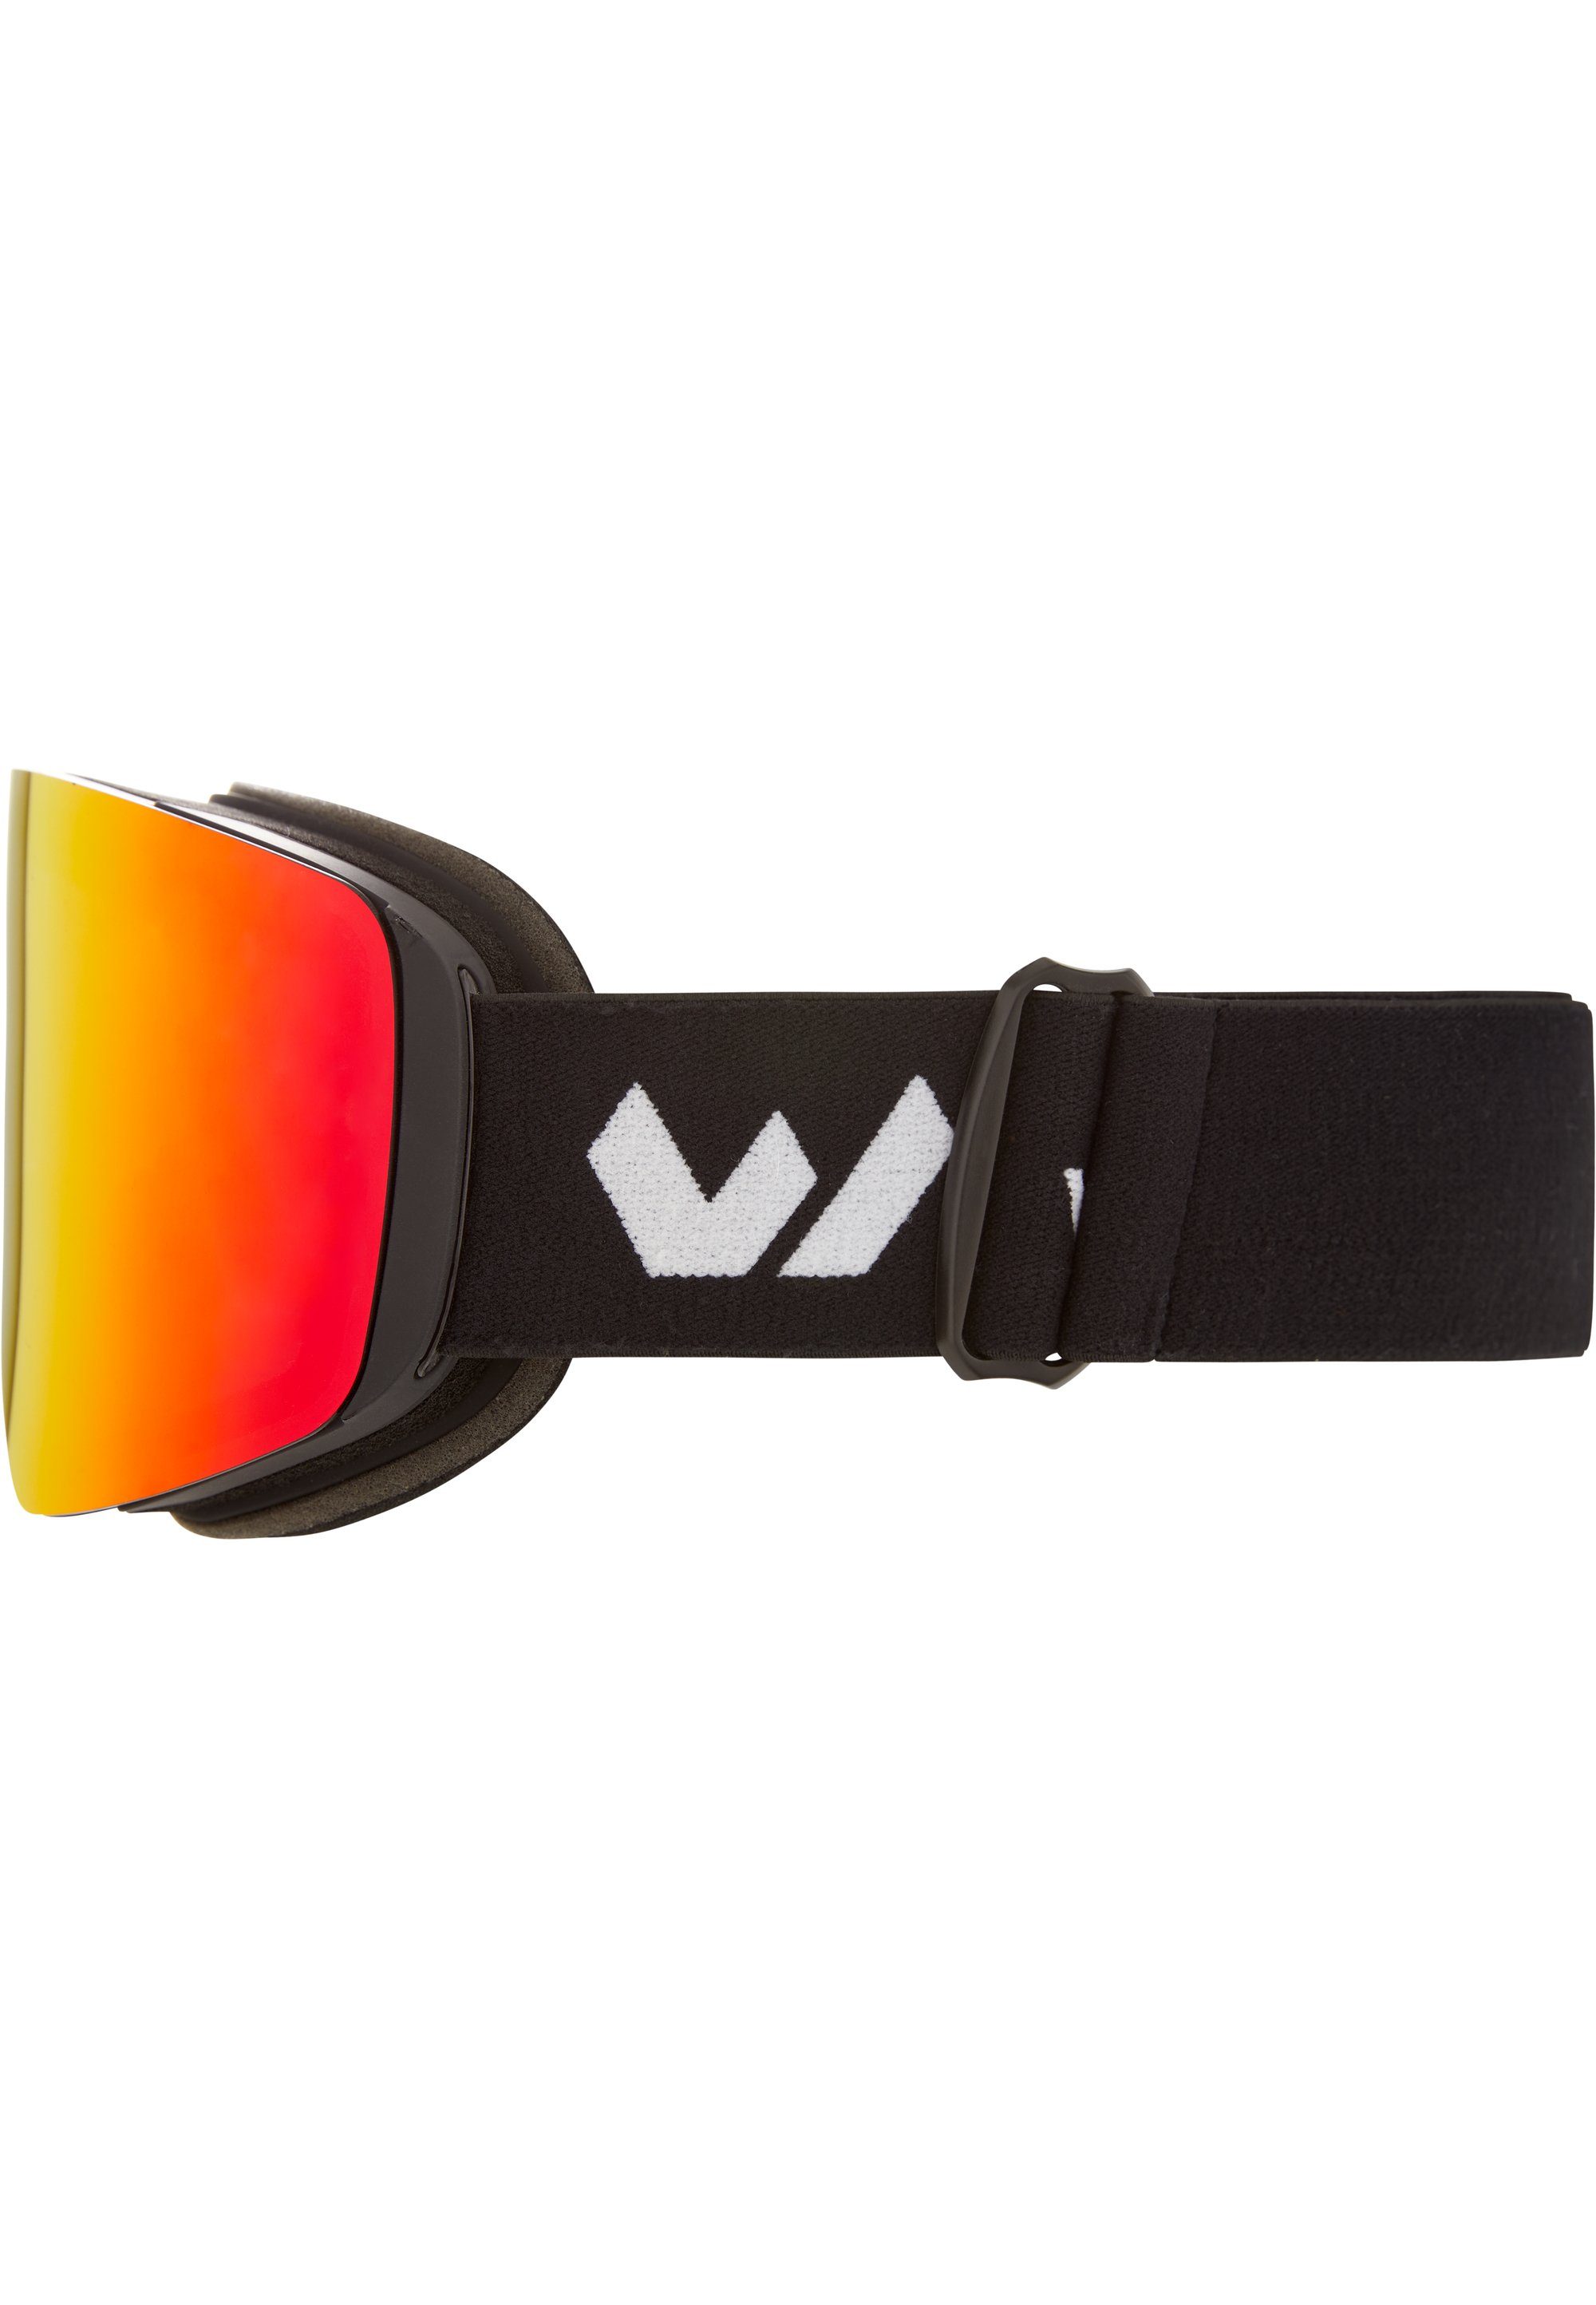 Skibrille Gläsern WS7100, WHISTLER mit austauschbaren